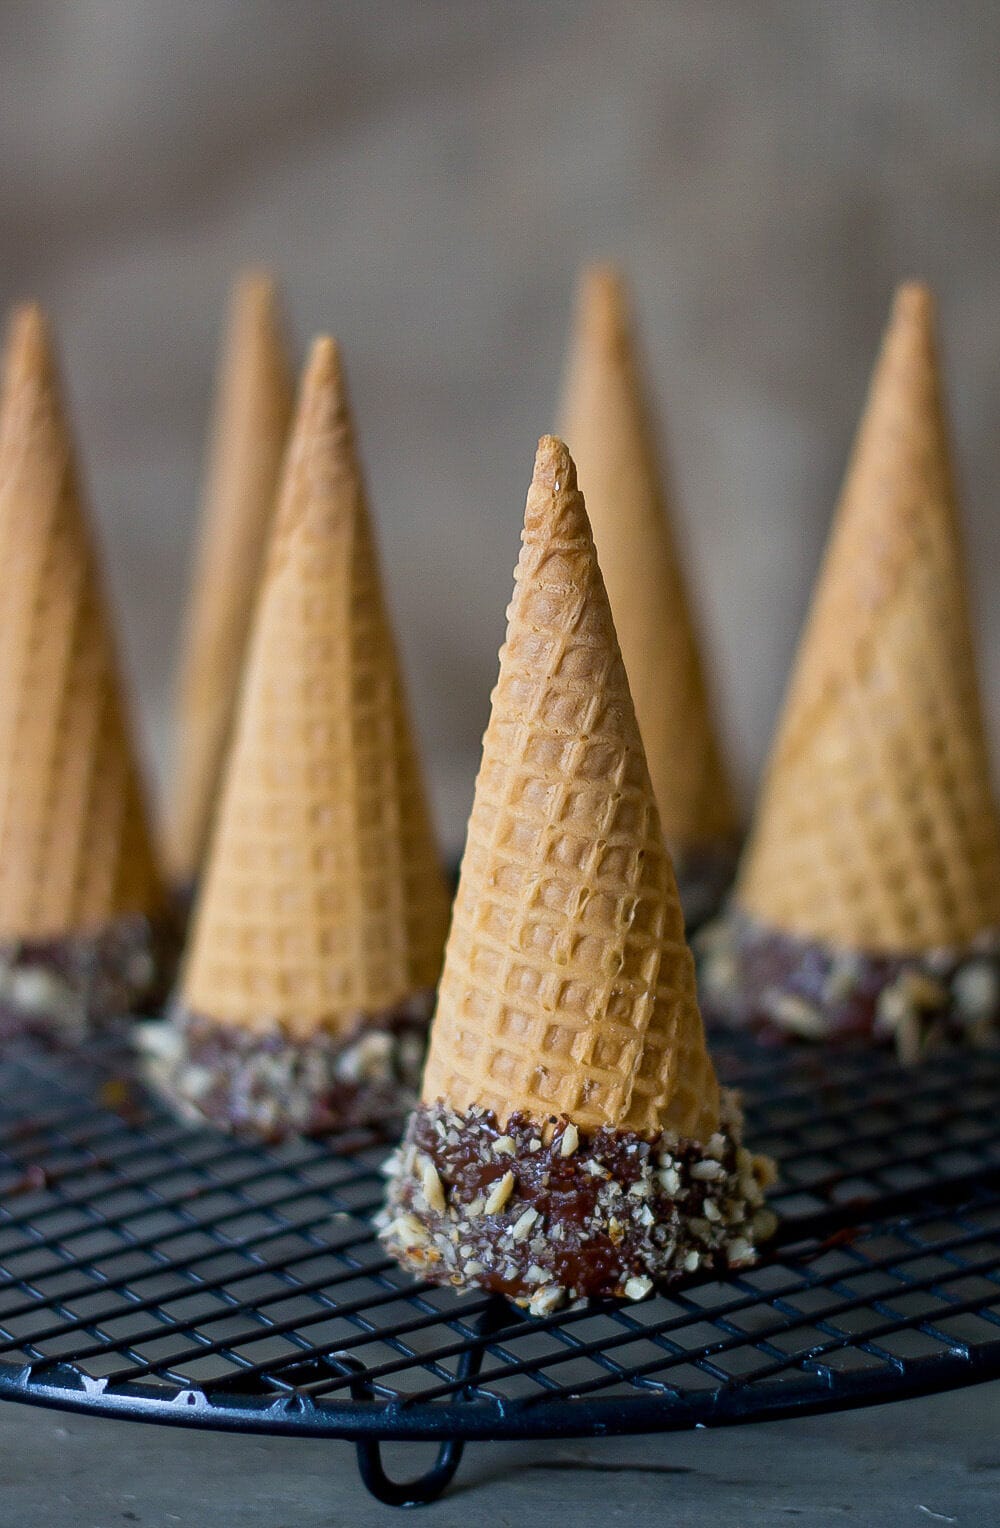 ice-cream-cones-site1-21-2857883